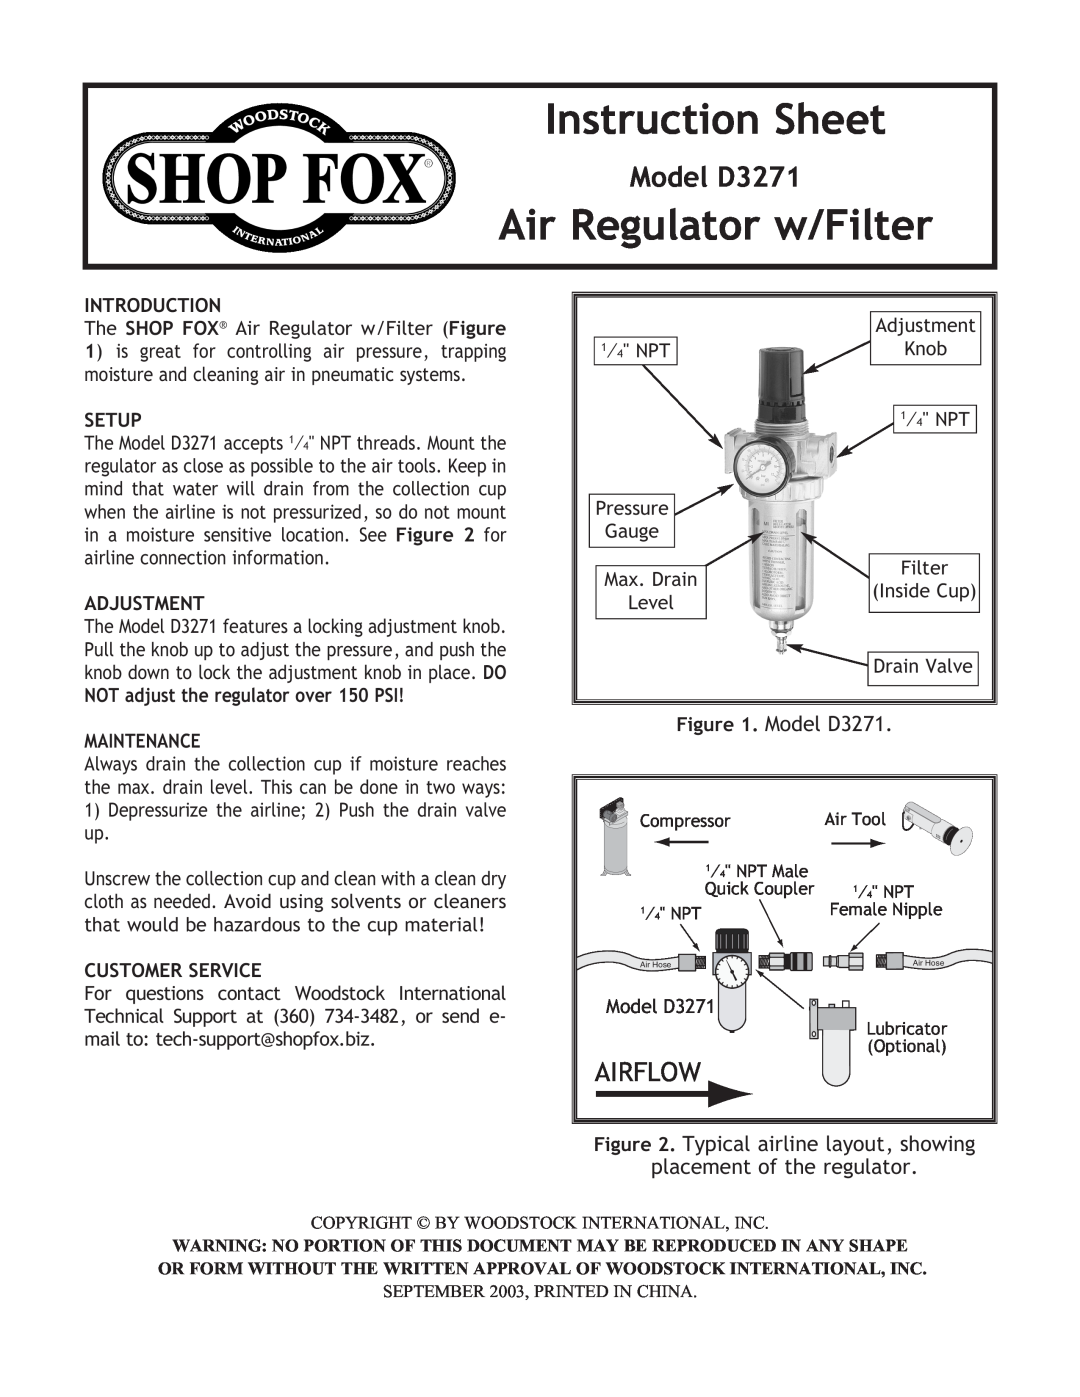 Woodstock instruction sheet Instruction Sheet, Air Regulator w/Filter, Model D3271, Airflow, placement of the regulator 